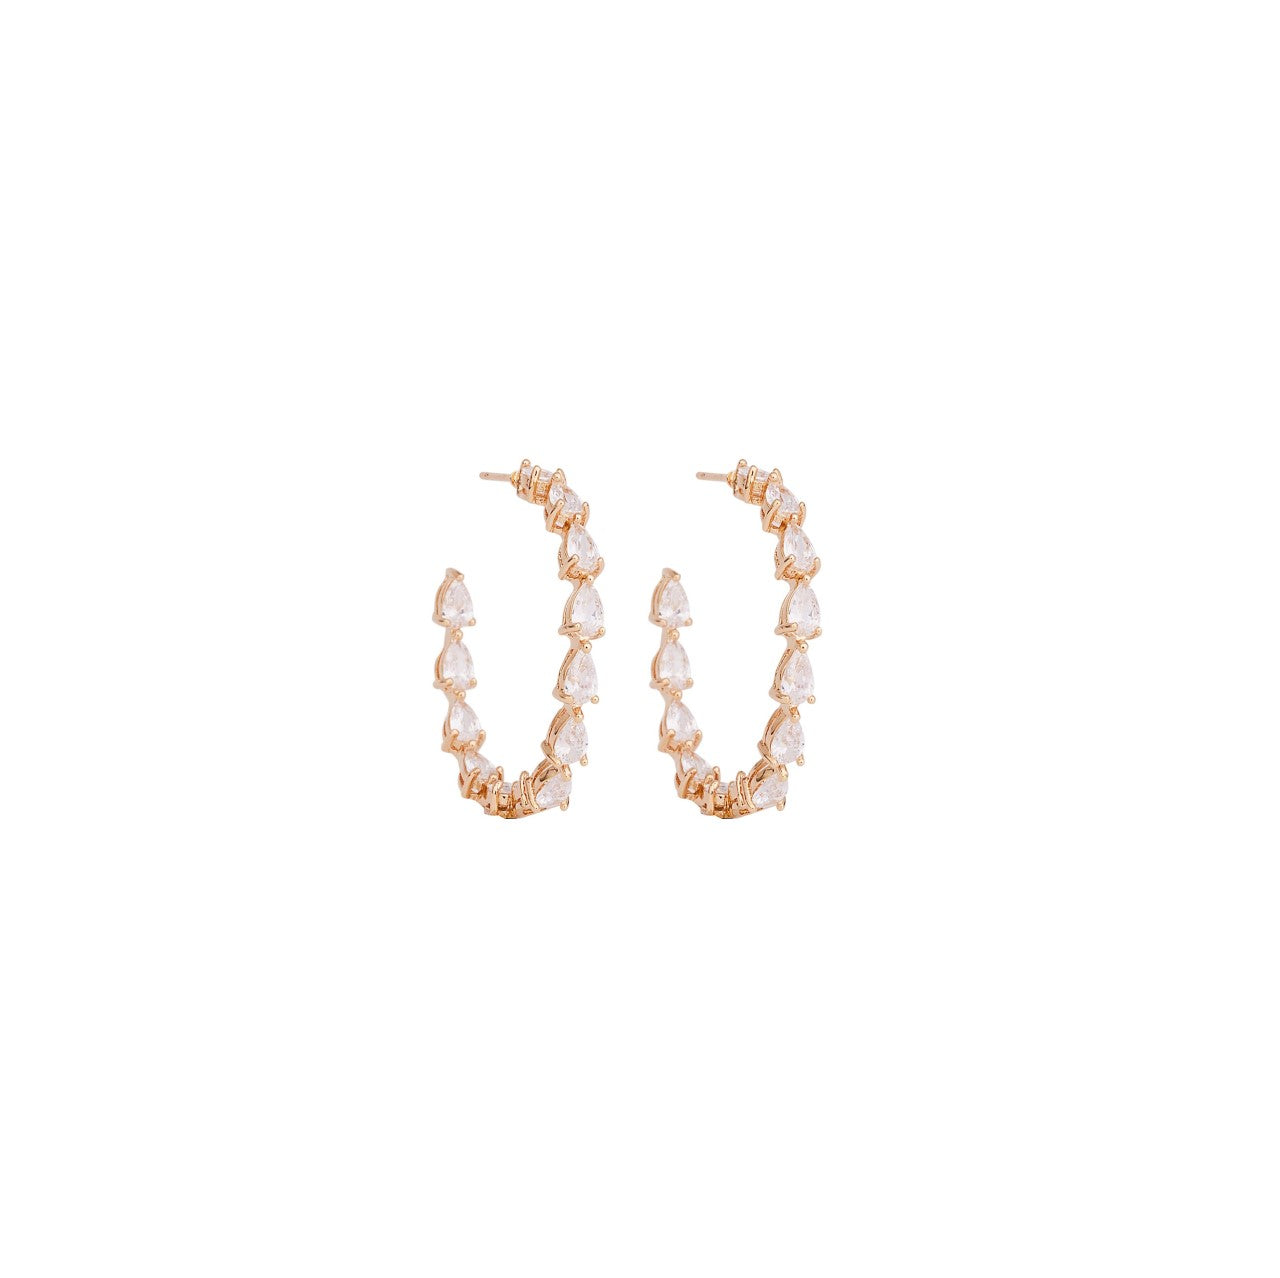 Open Hoop Earrings encrusted with Cubic Zirconia - Bridal Earrings